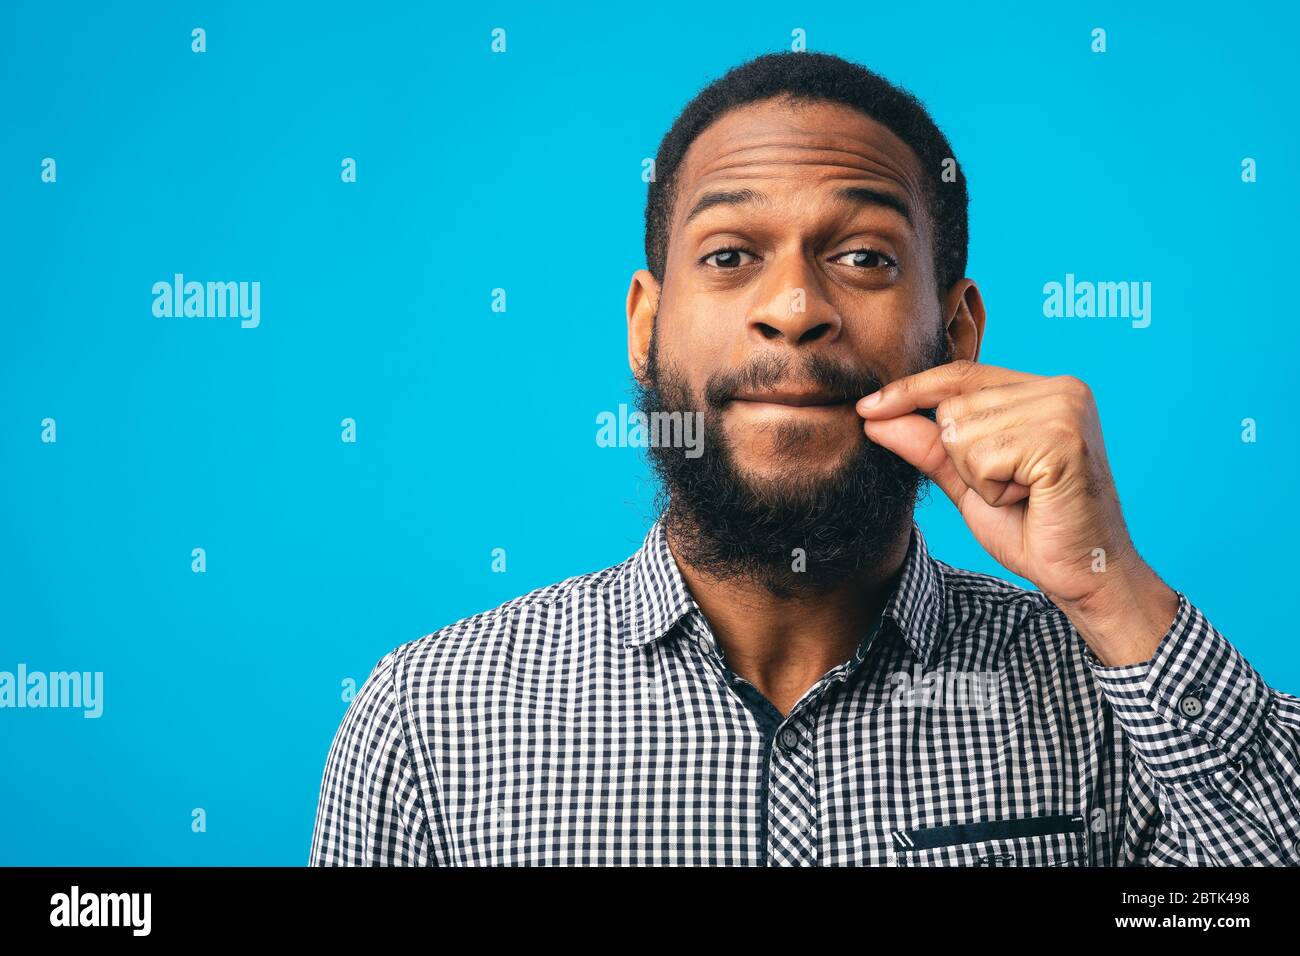 Je ne dirai PAS UN mot. Homme barbu noir faisant des lèvres de zipping geste avec la main, montrant qu'il tiendra un secret, bleu studio Banque D'Images